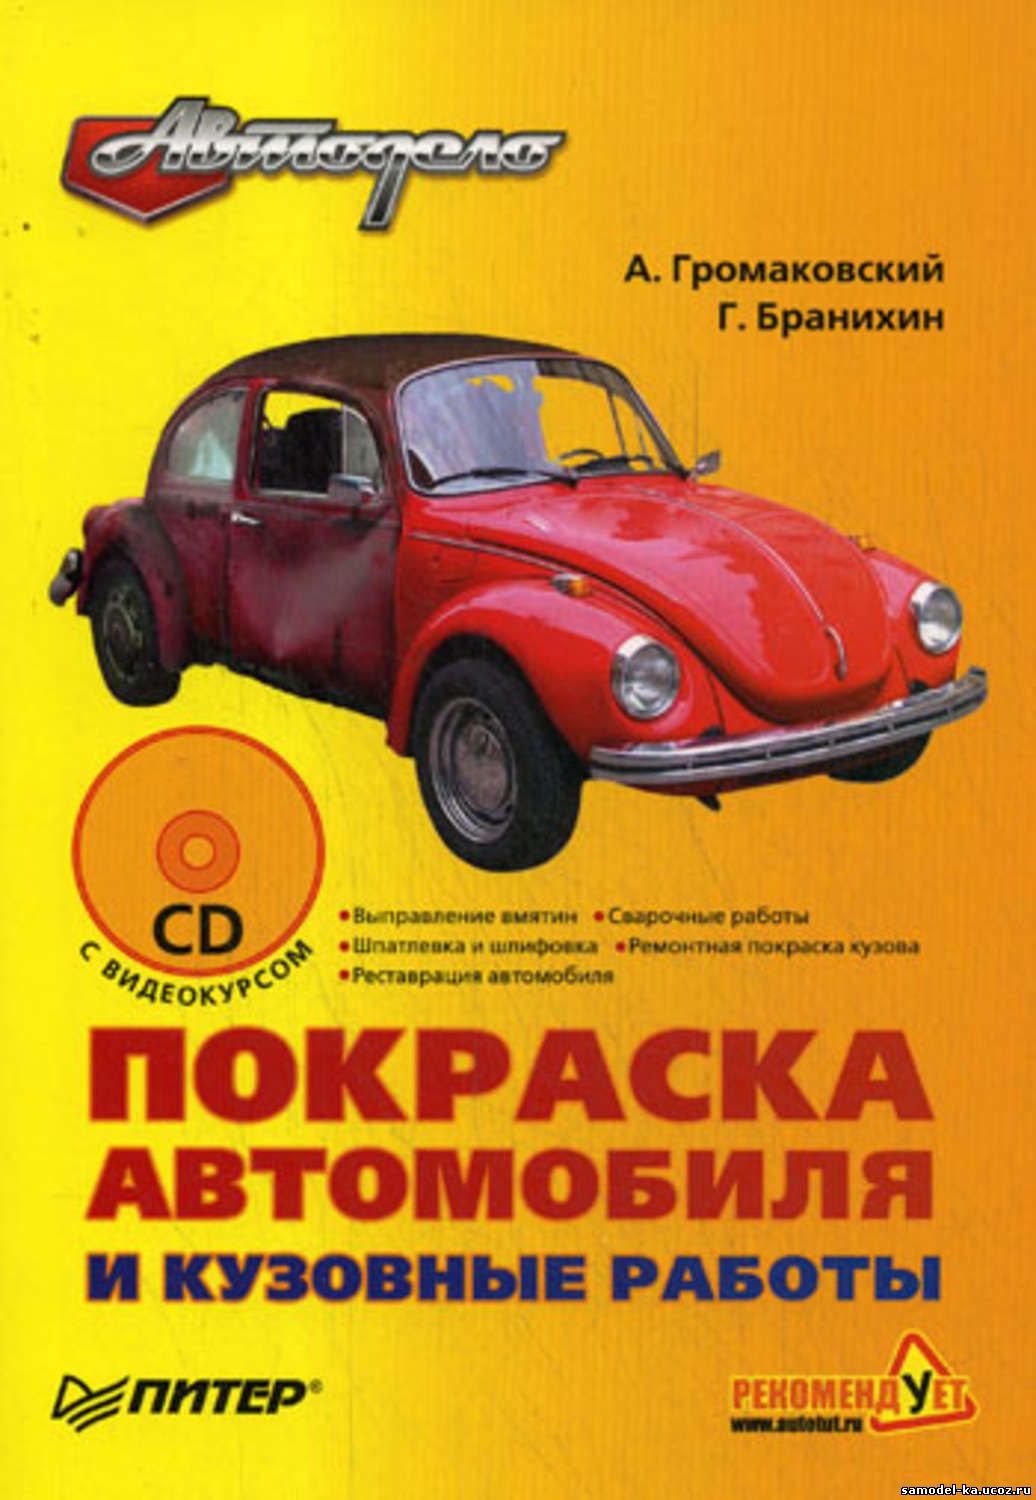 Покраска автомобиля и кузовные работы (2009) А. Громаковский